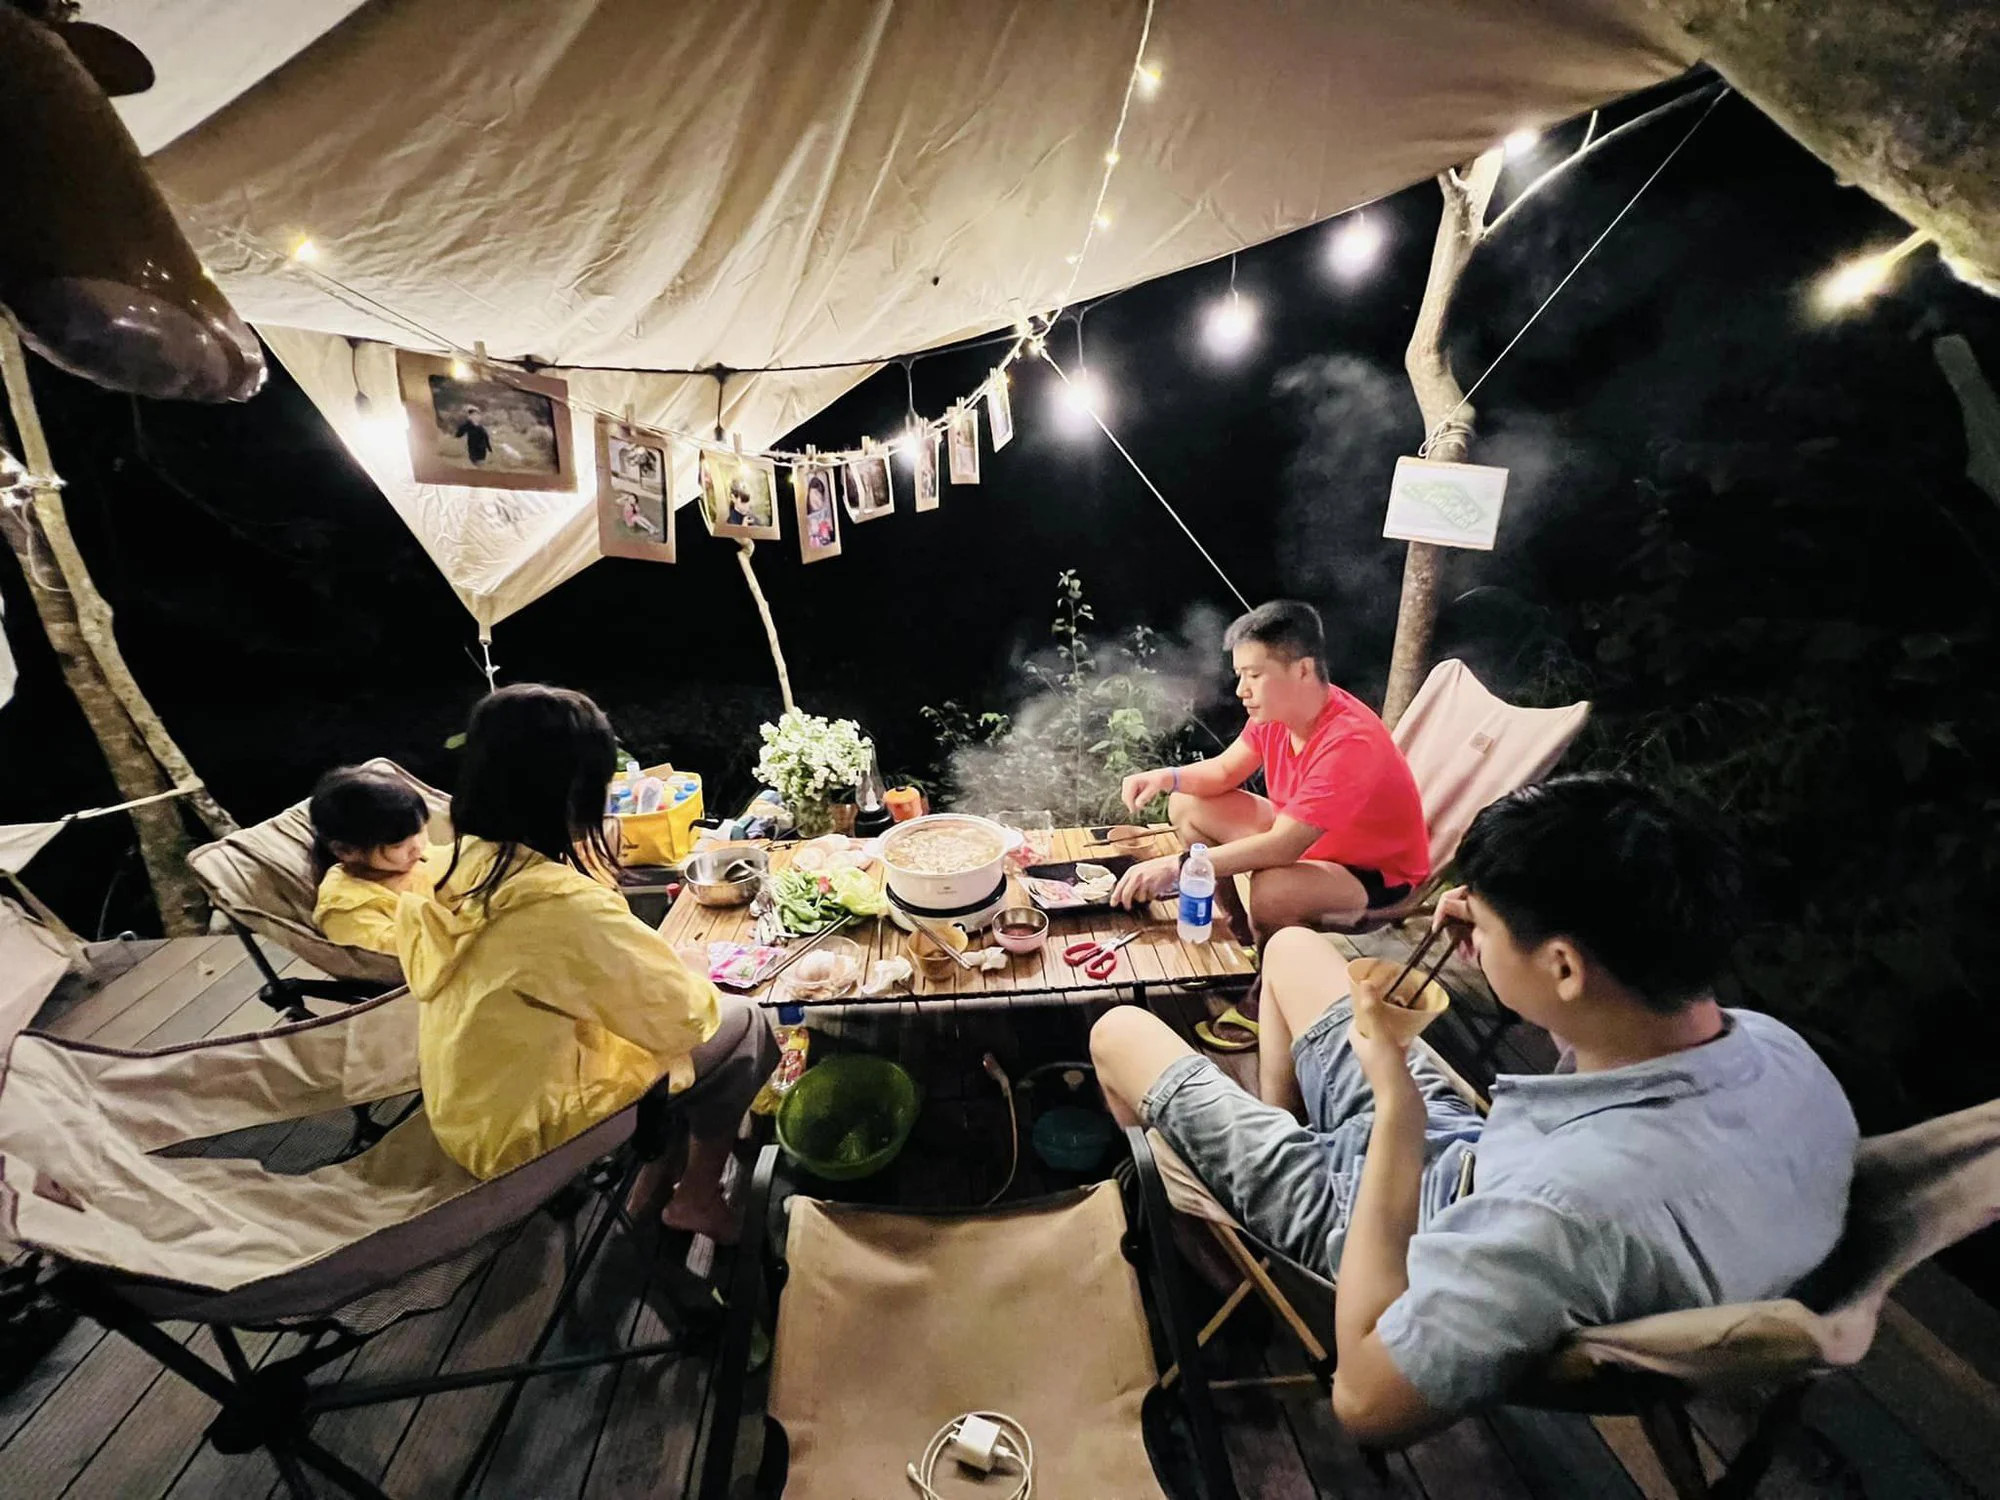 gia định đang cắm trại trong chiếc lều với nhiều đèn cắm trại